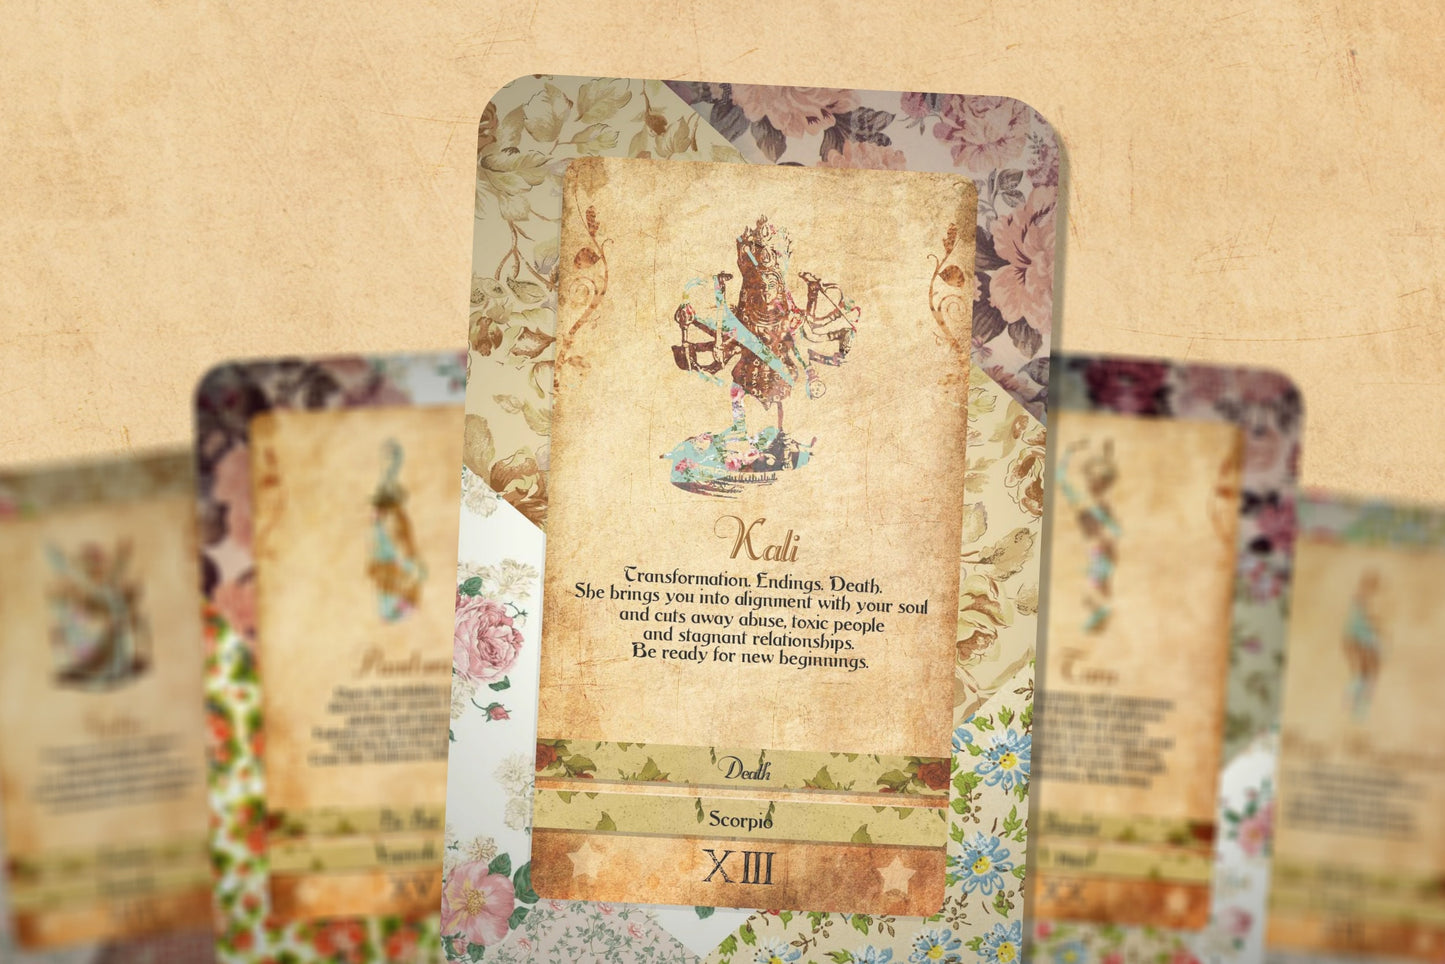 Tarot Deck - Goddess Power Cards - Major Arcana - Sacred Feminine Oracle